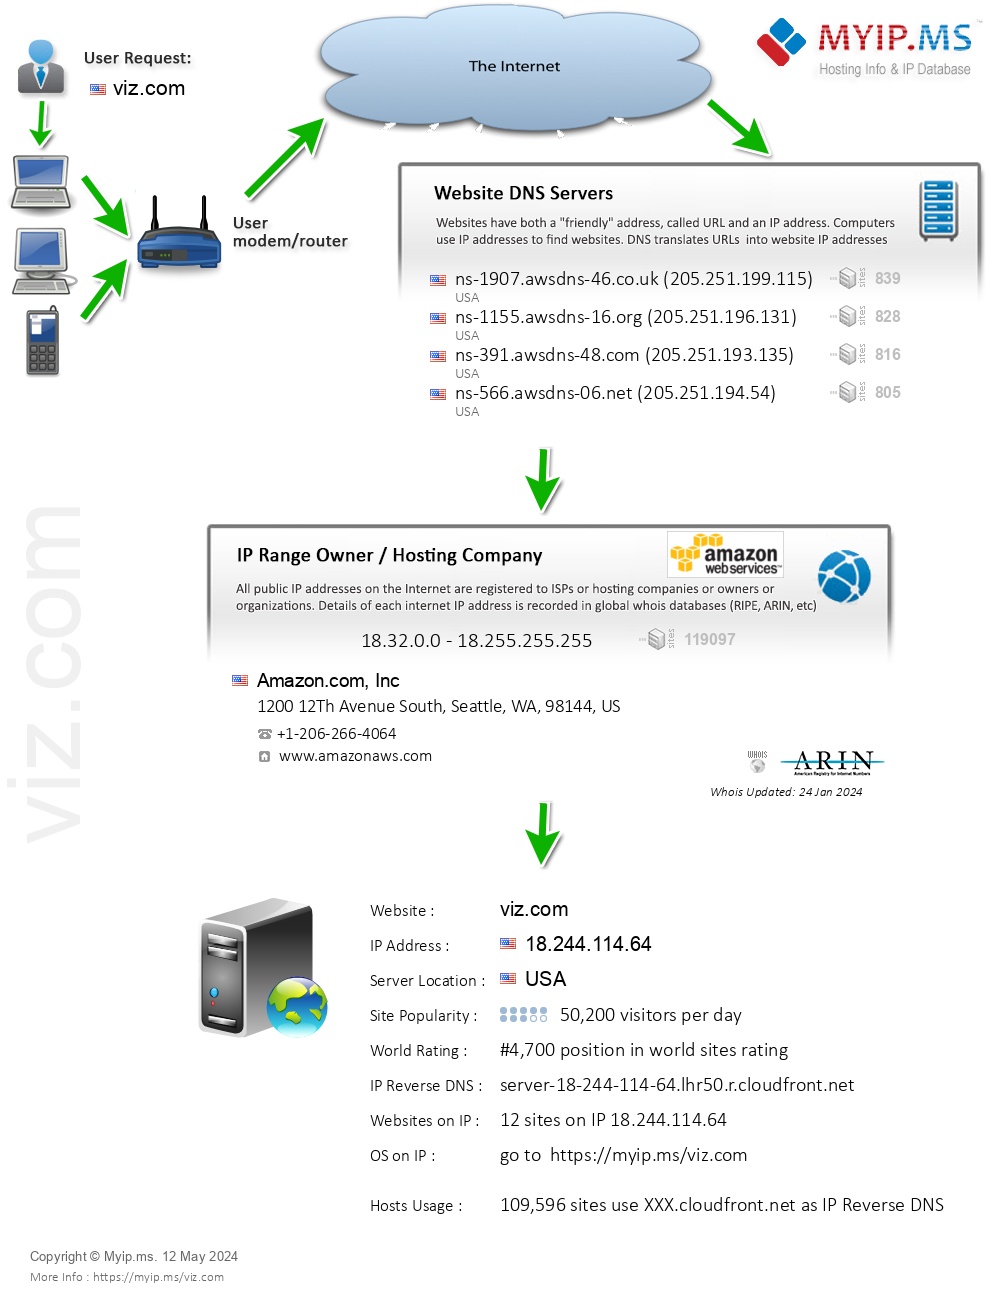 Viz.com - Website Hosting Visual IP Diagram